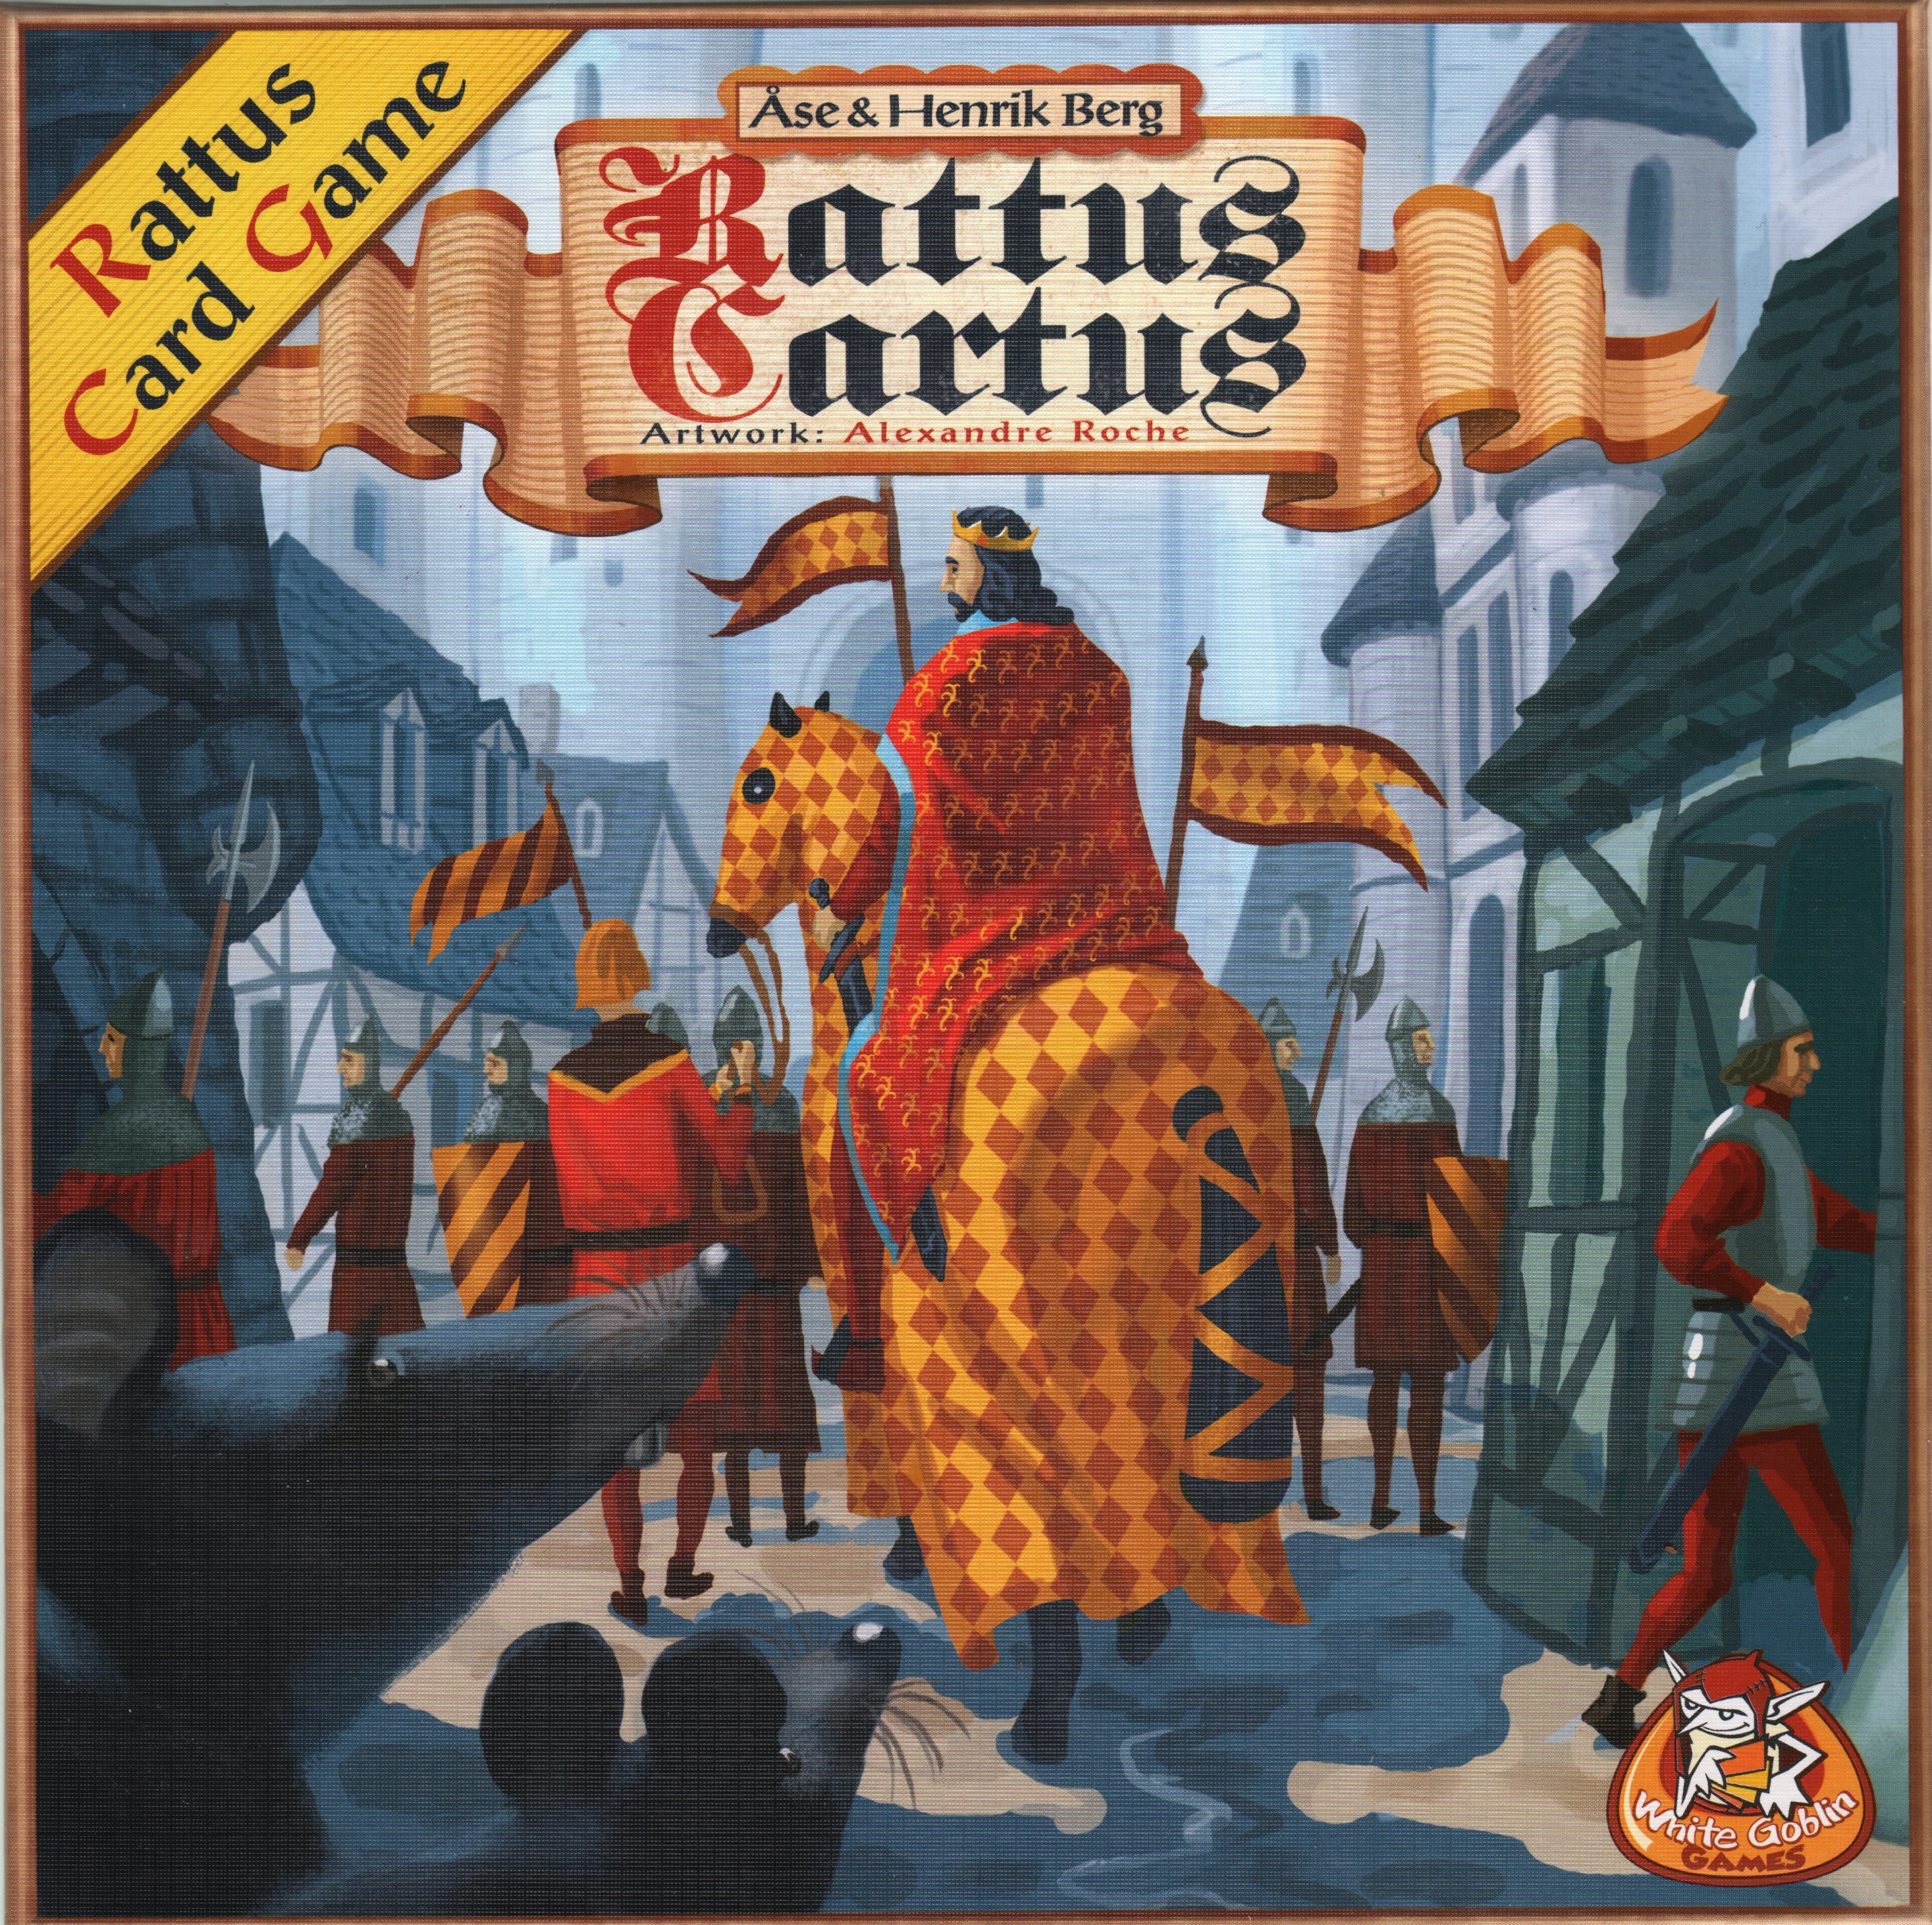 Rattus Cartus